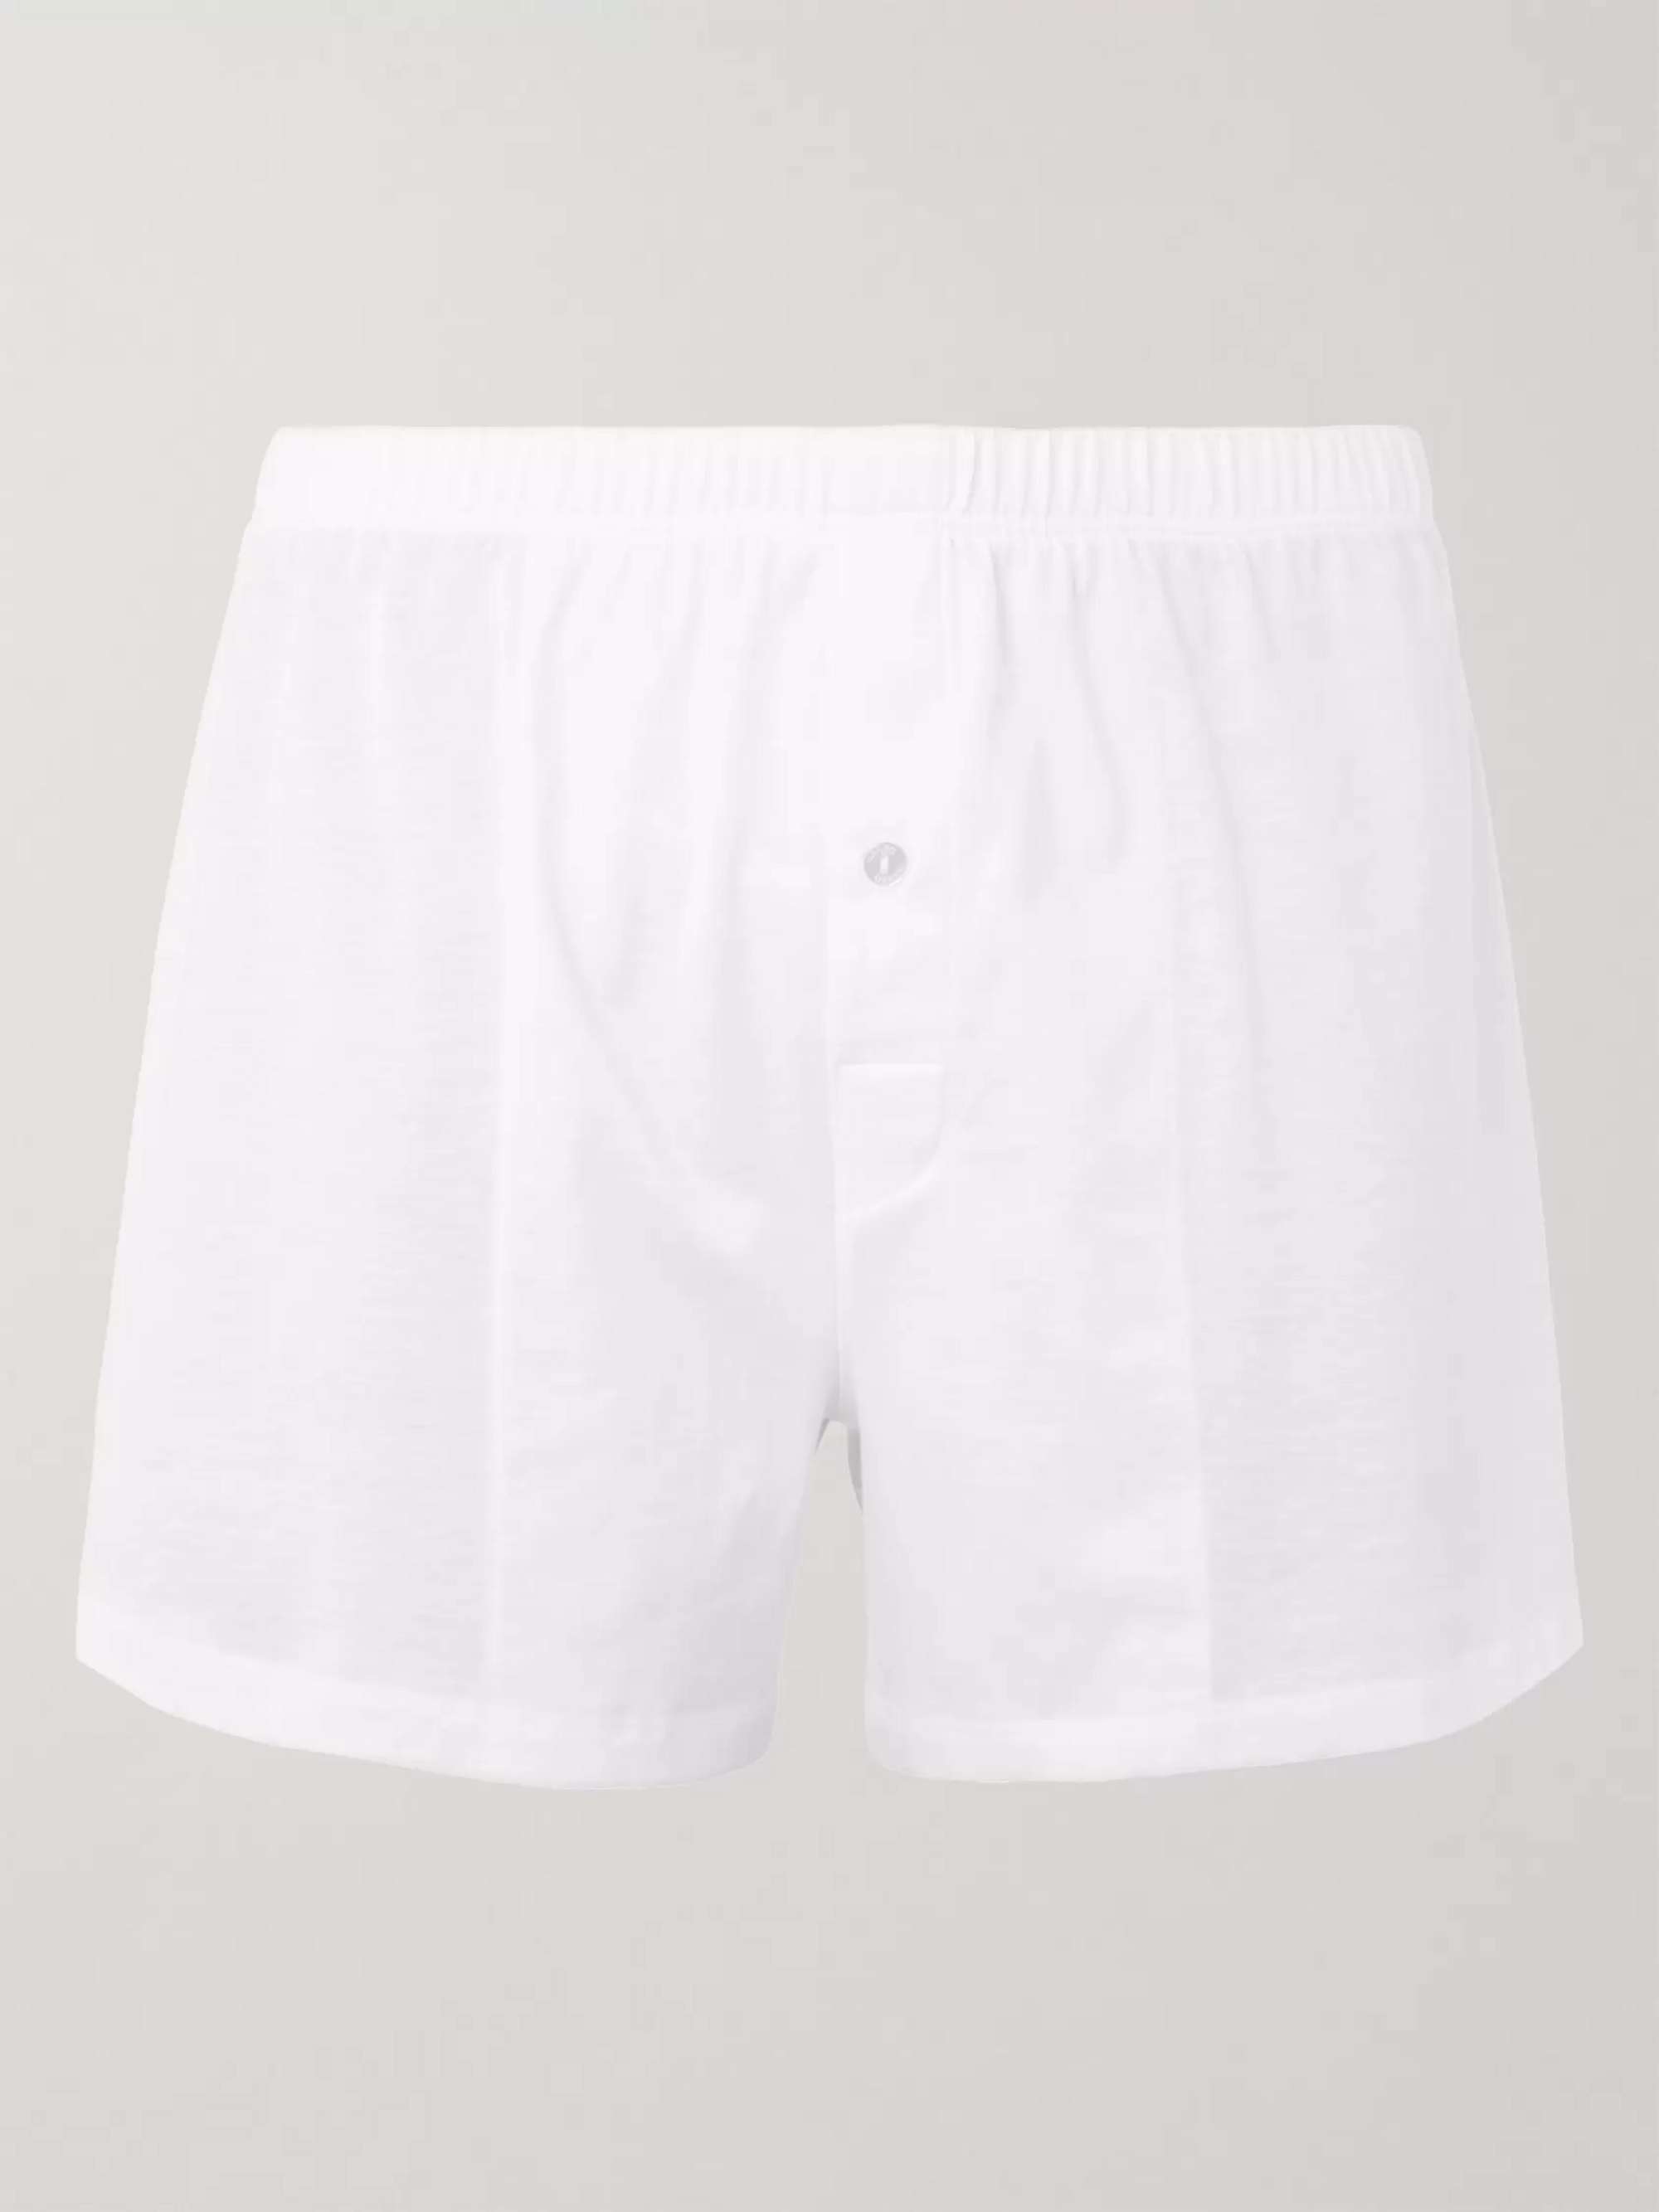 Sporty Mercerised Cotton Boxer Shorts